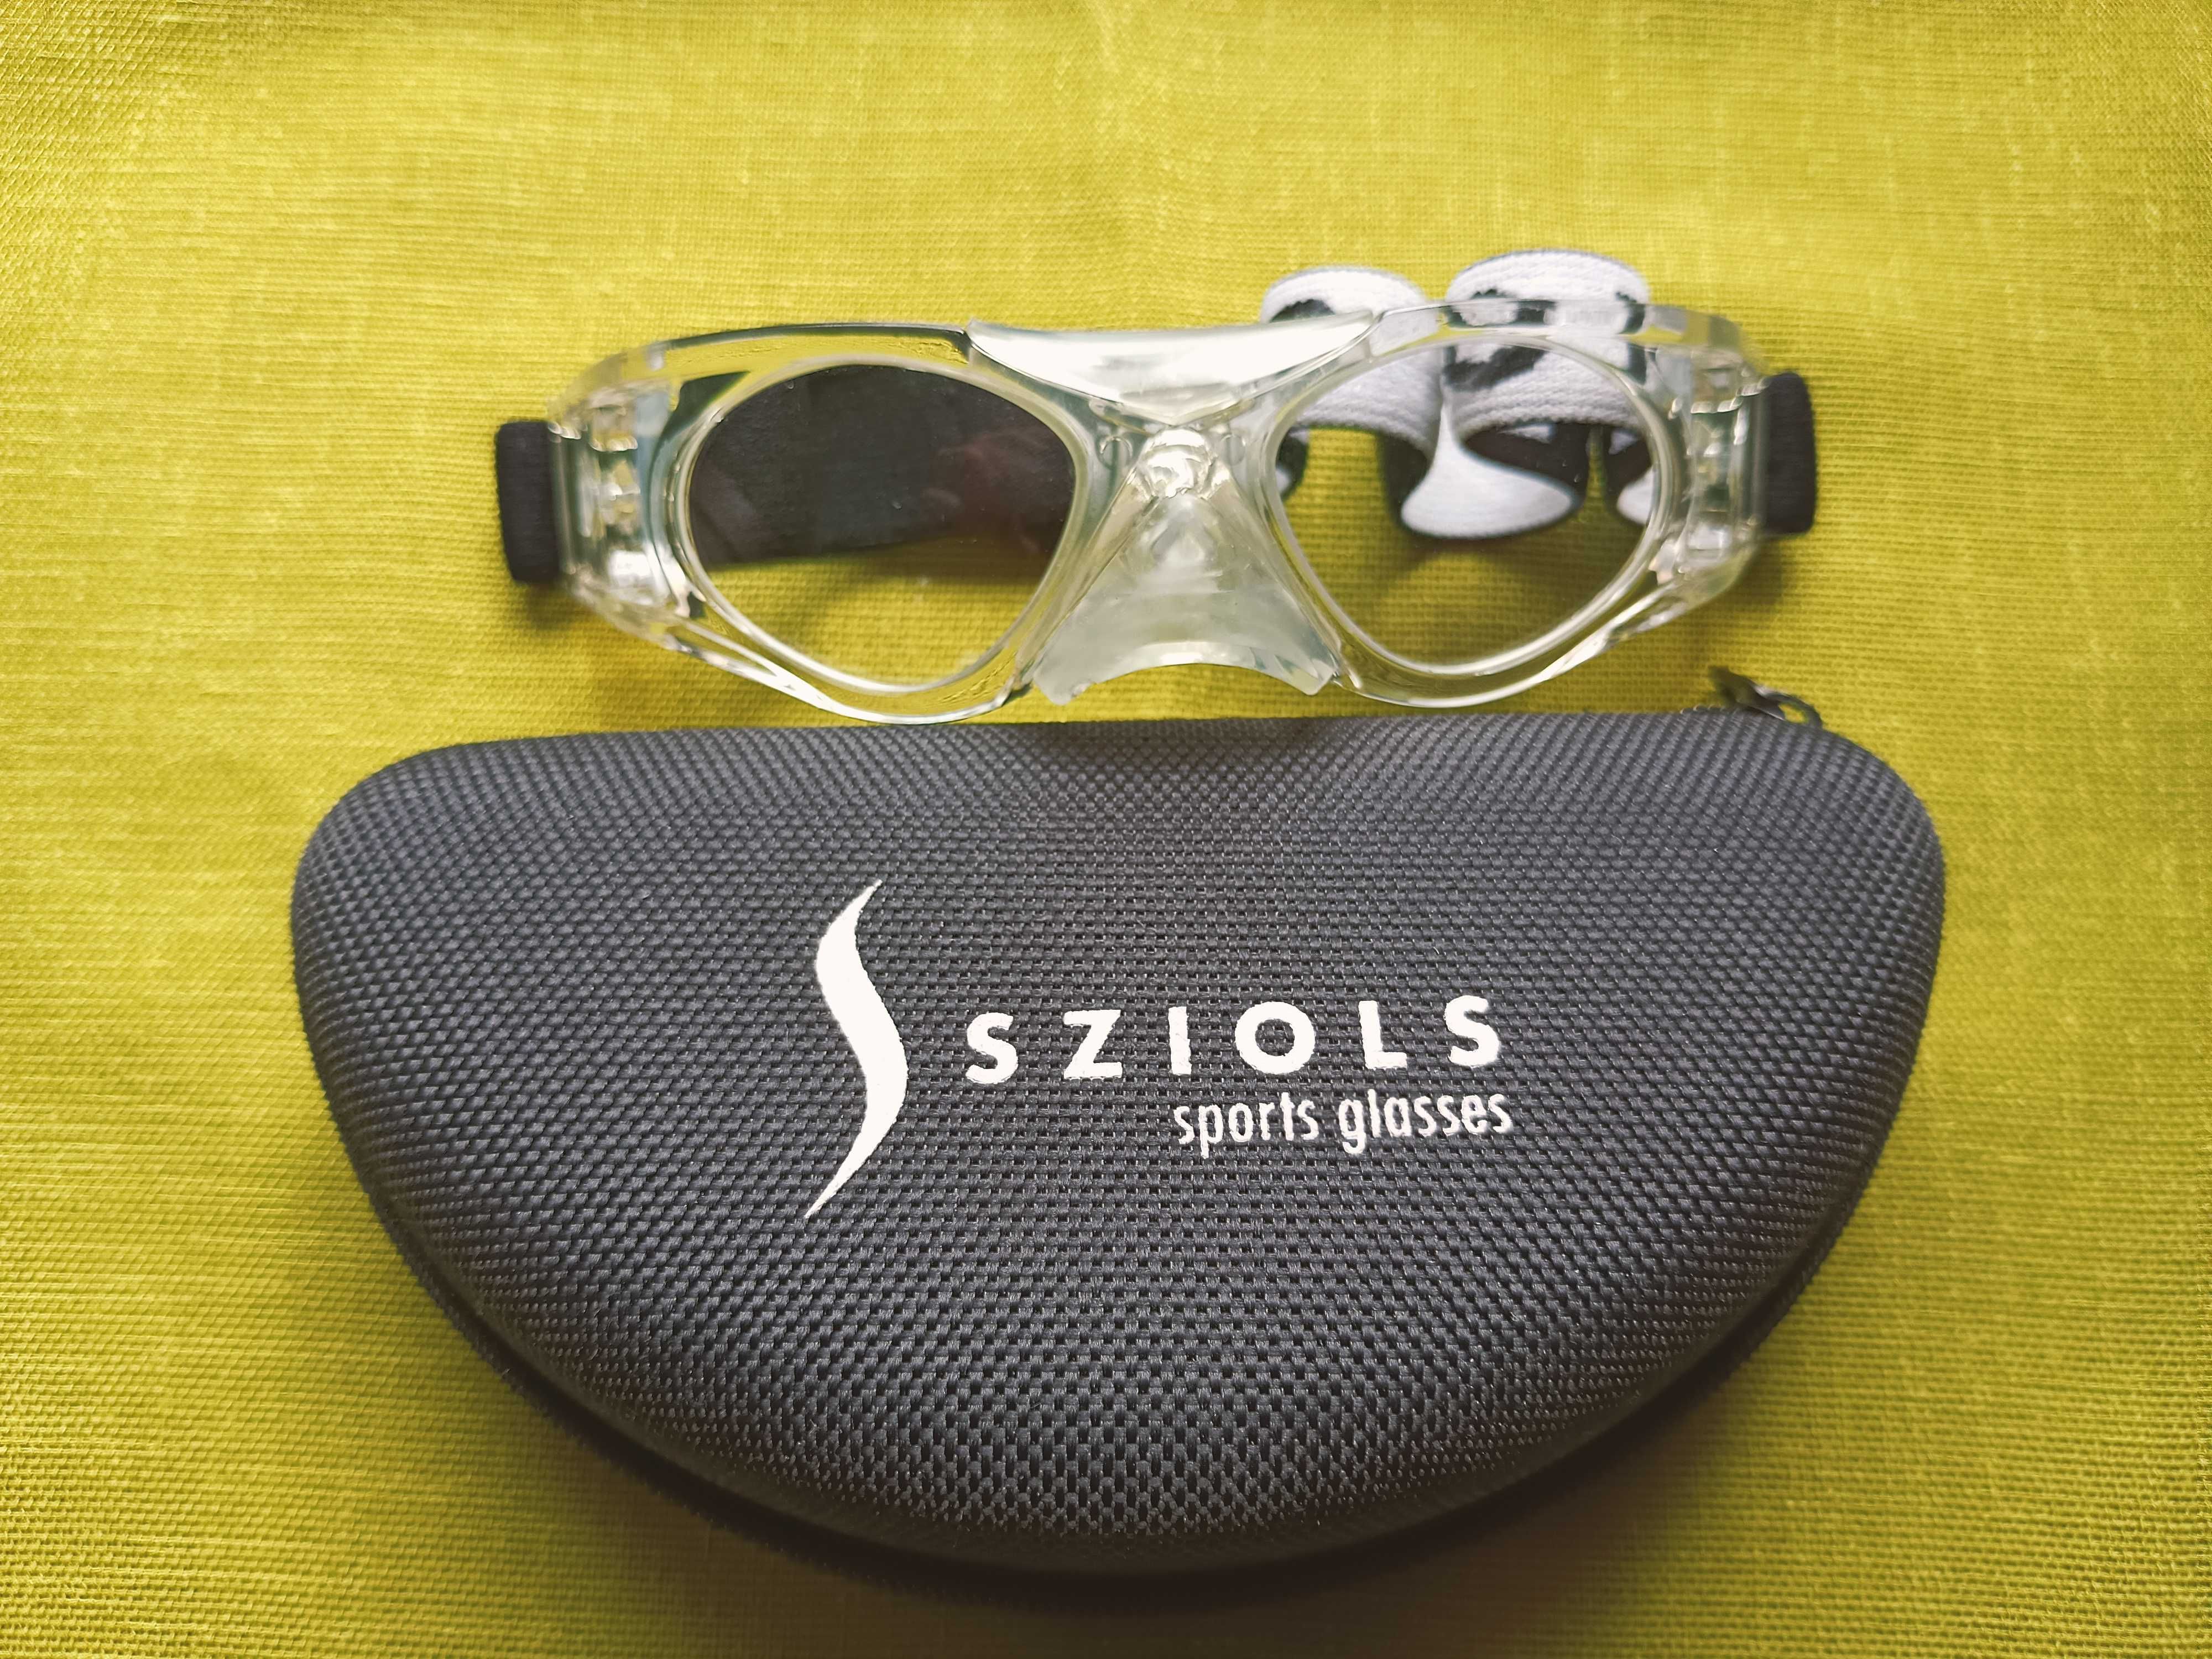 Oprawki okularów sportowych dla dziecka Sziols